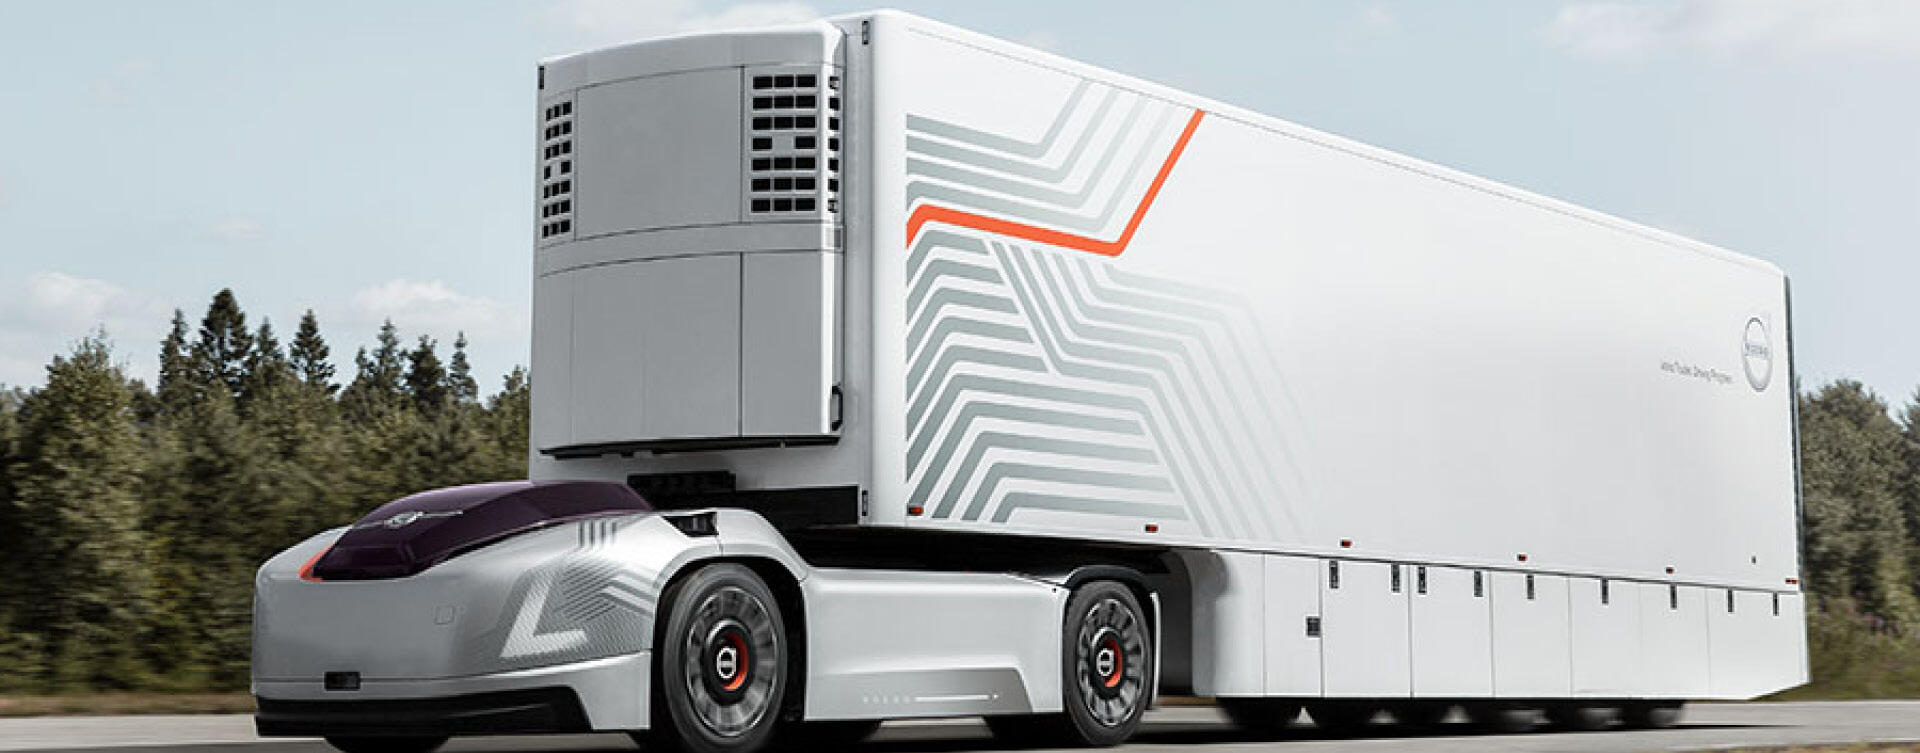 Volvo Trucks introduceert zelfrijdende elektrische truck